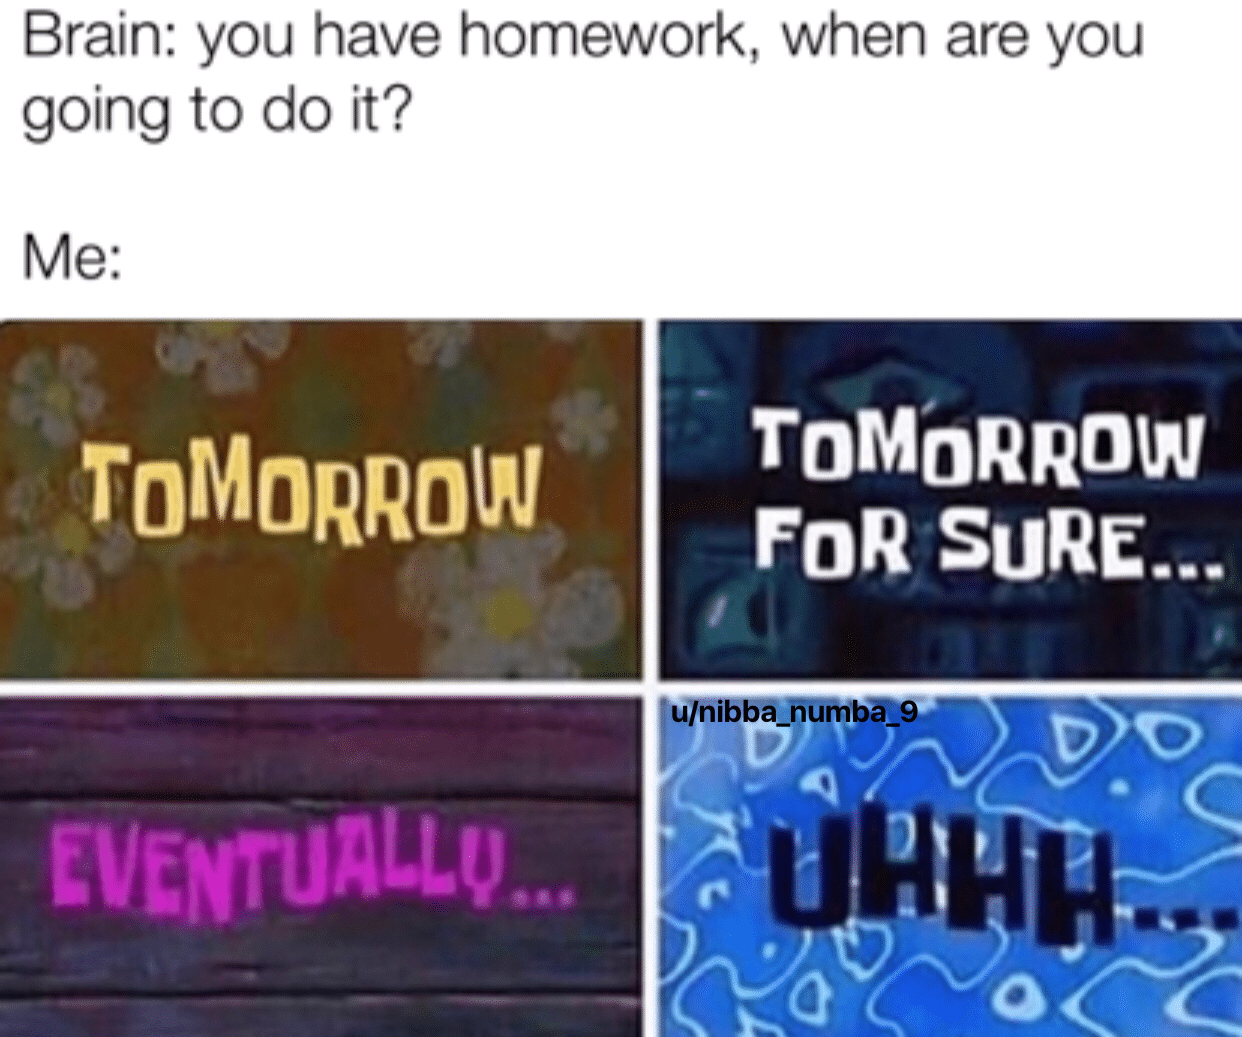 spongebob spongebob-memes spongebob text: Brain: you have homework, when are you going to do it? ToM0RR0W TOMORROW FDR SURE... 